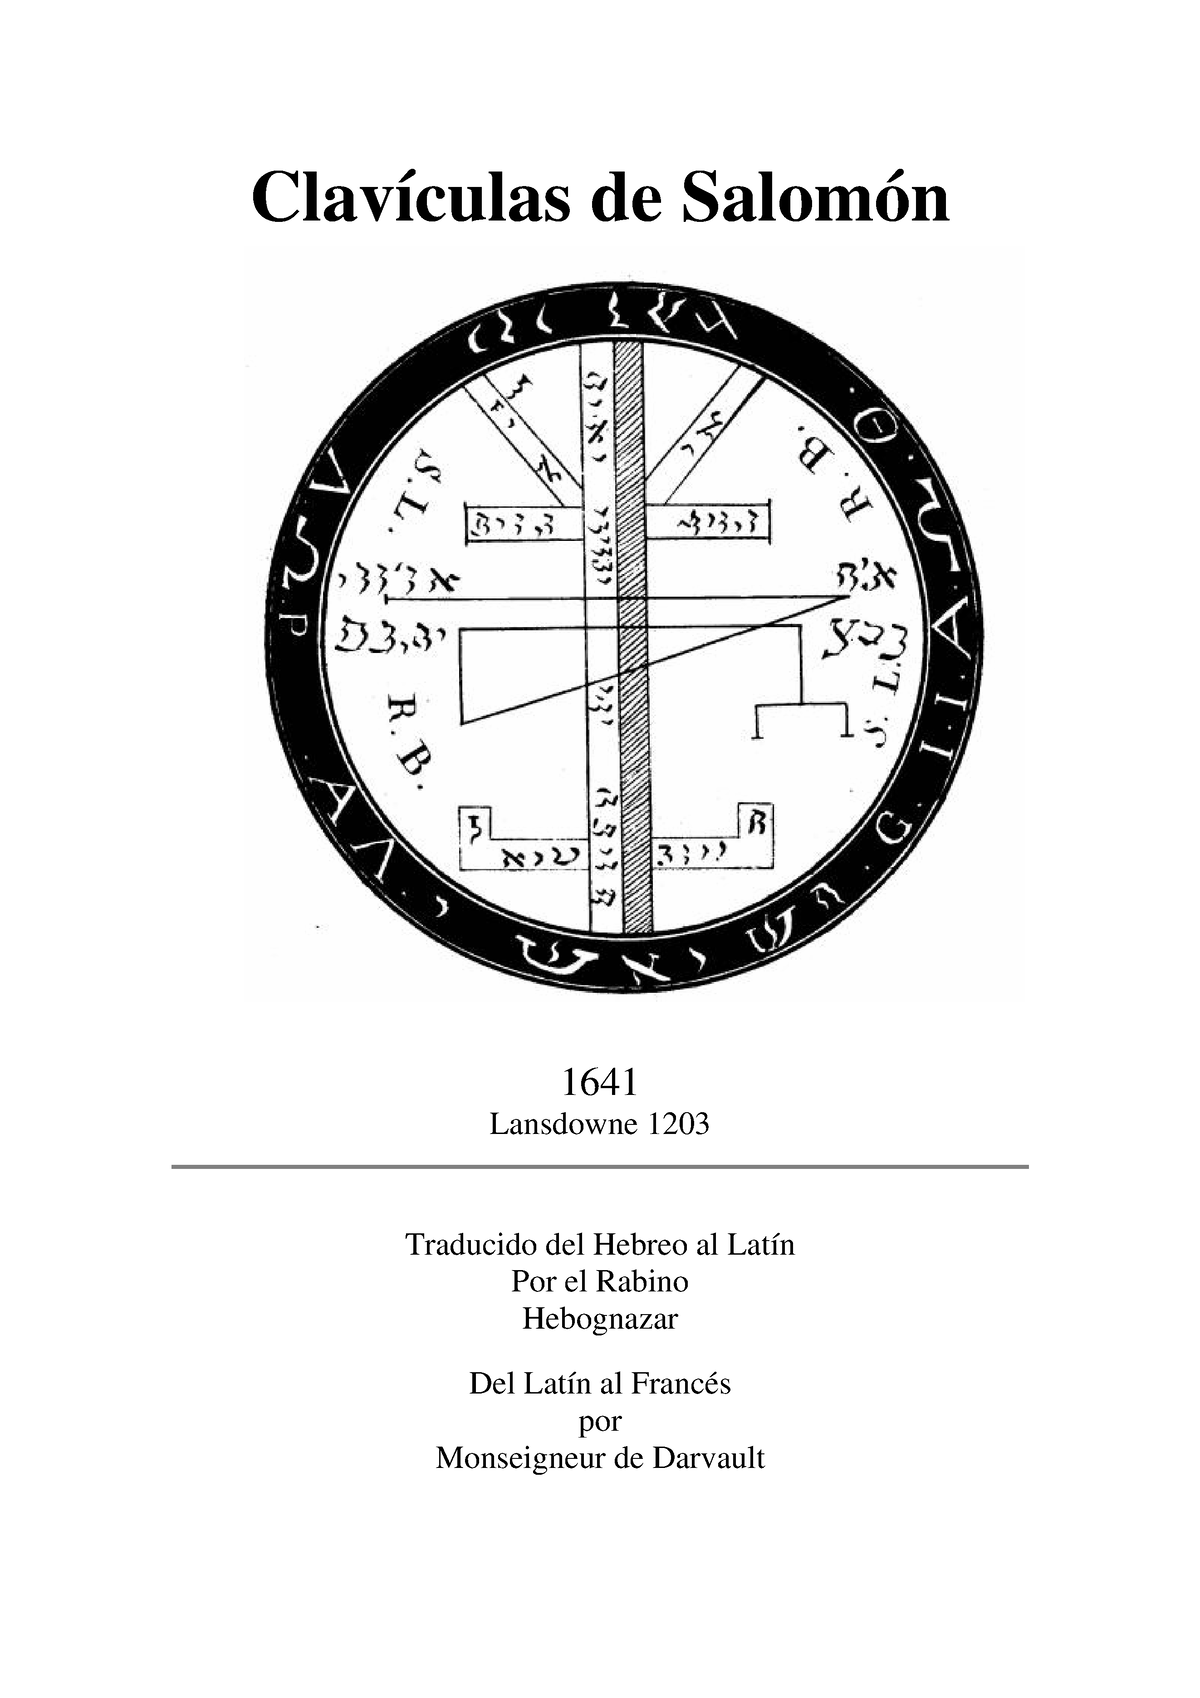 Toestand Defilé kloof Claviculas de Salomon - Clavículas de Salomón 1641 Lansdowne 1203 Traducido  del Hebreo al Latín Por - Studocu